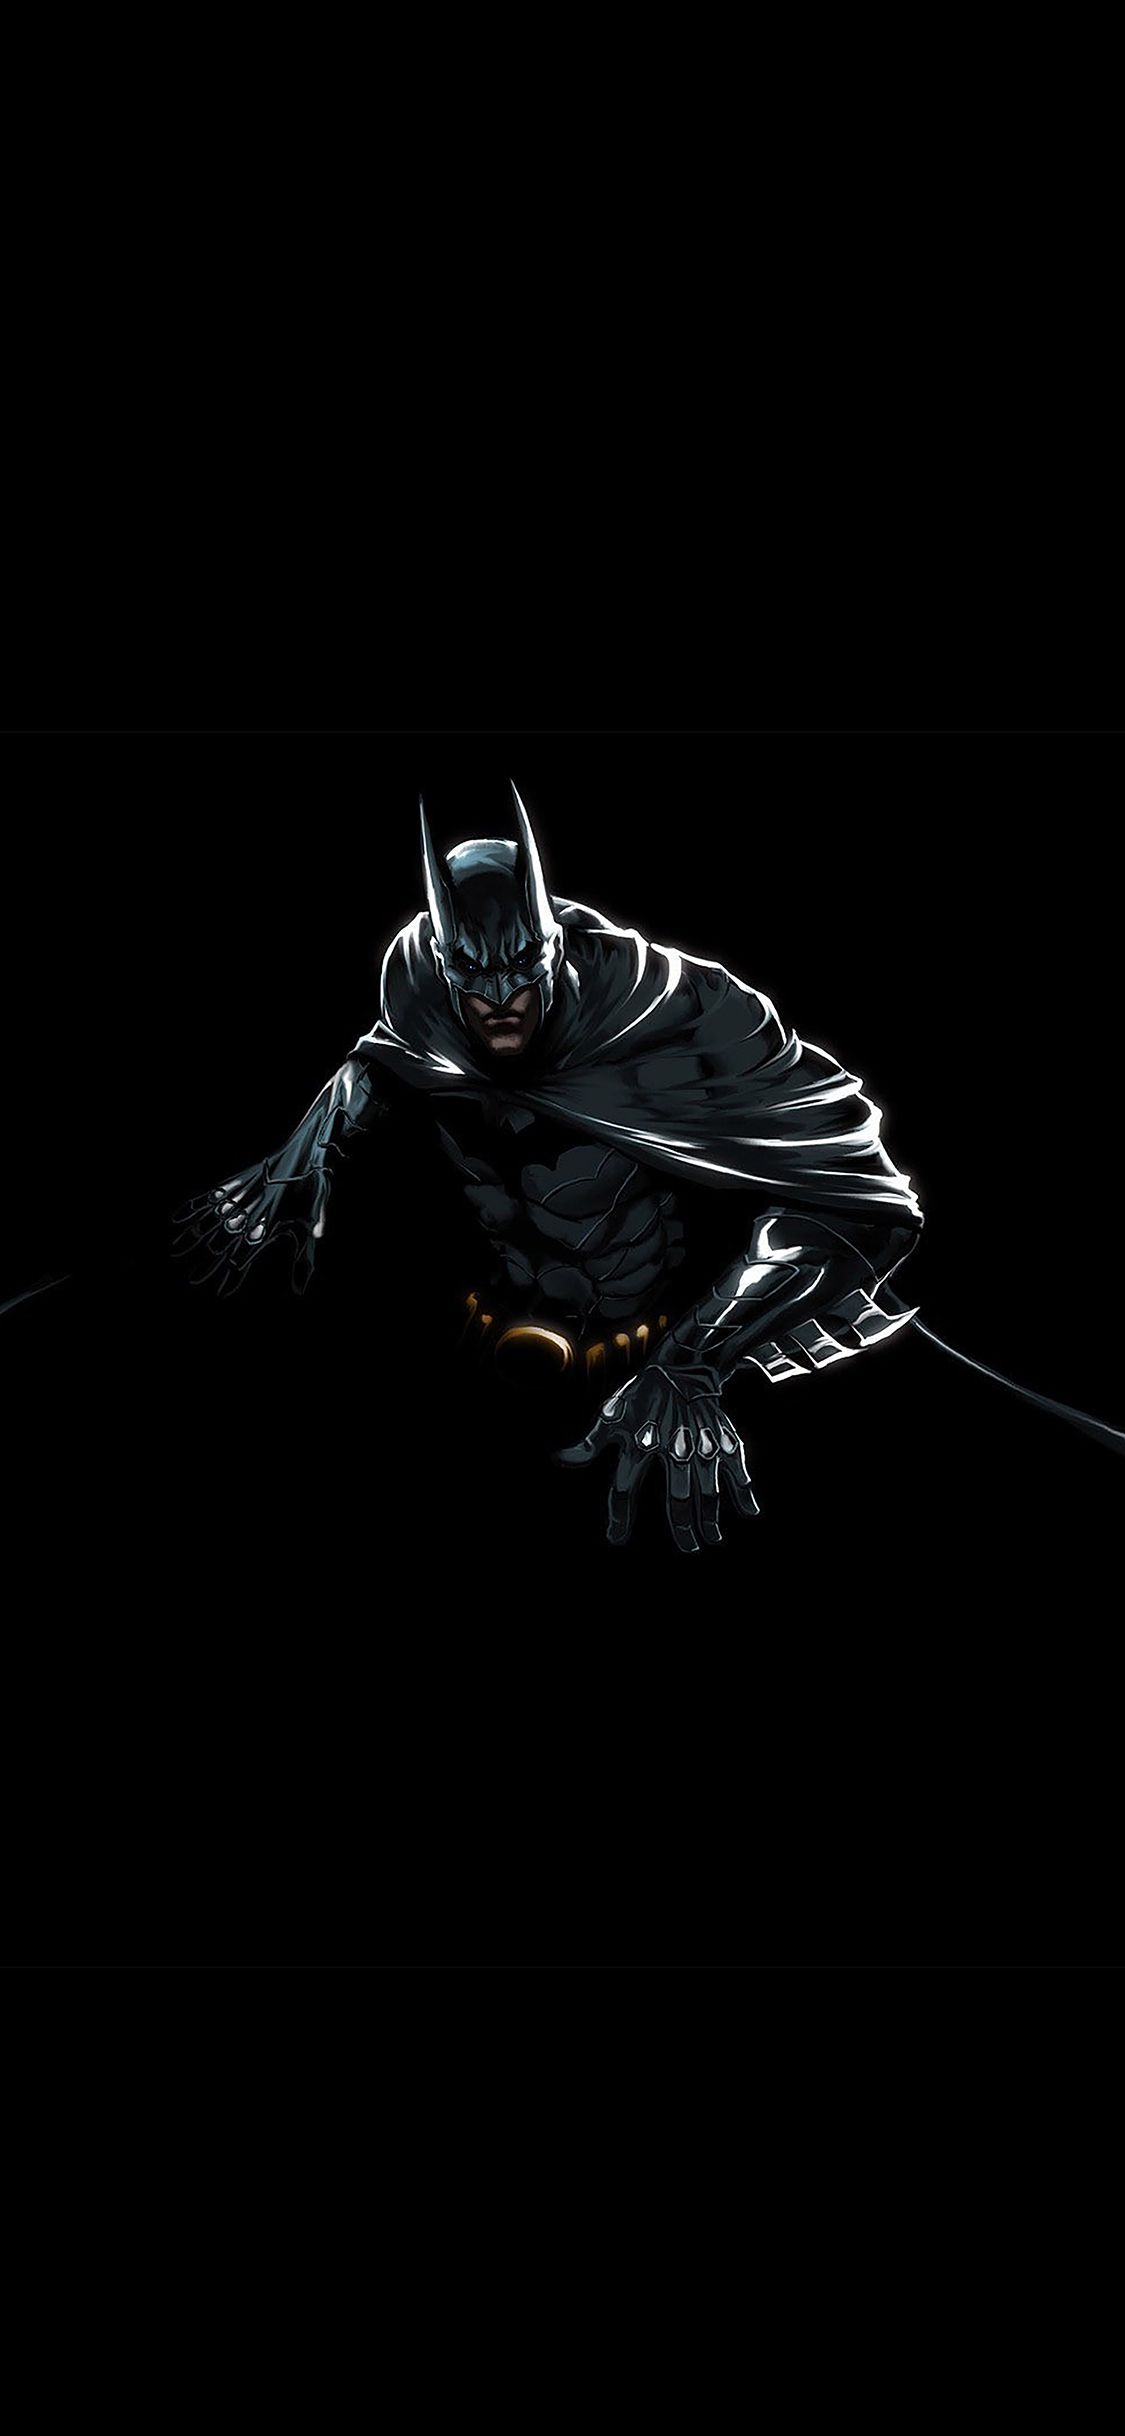 iPhone wallpaper. batman dark hero pose illust art